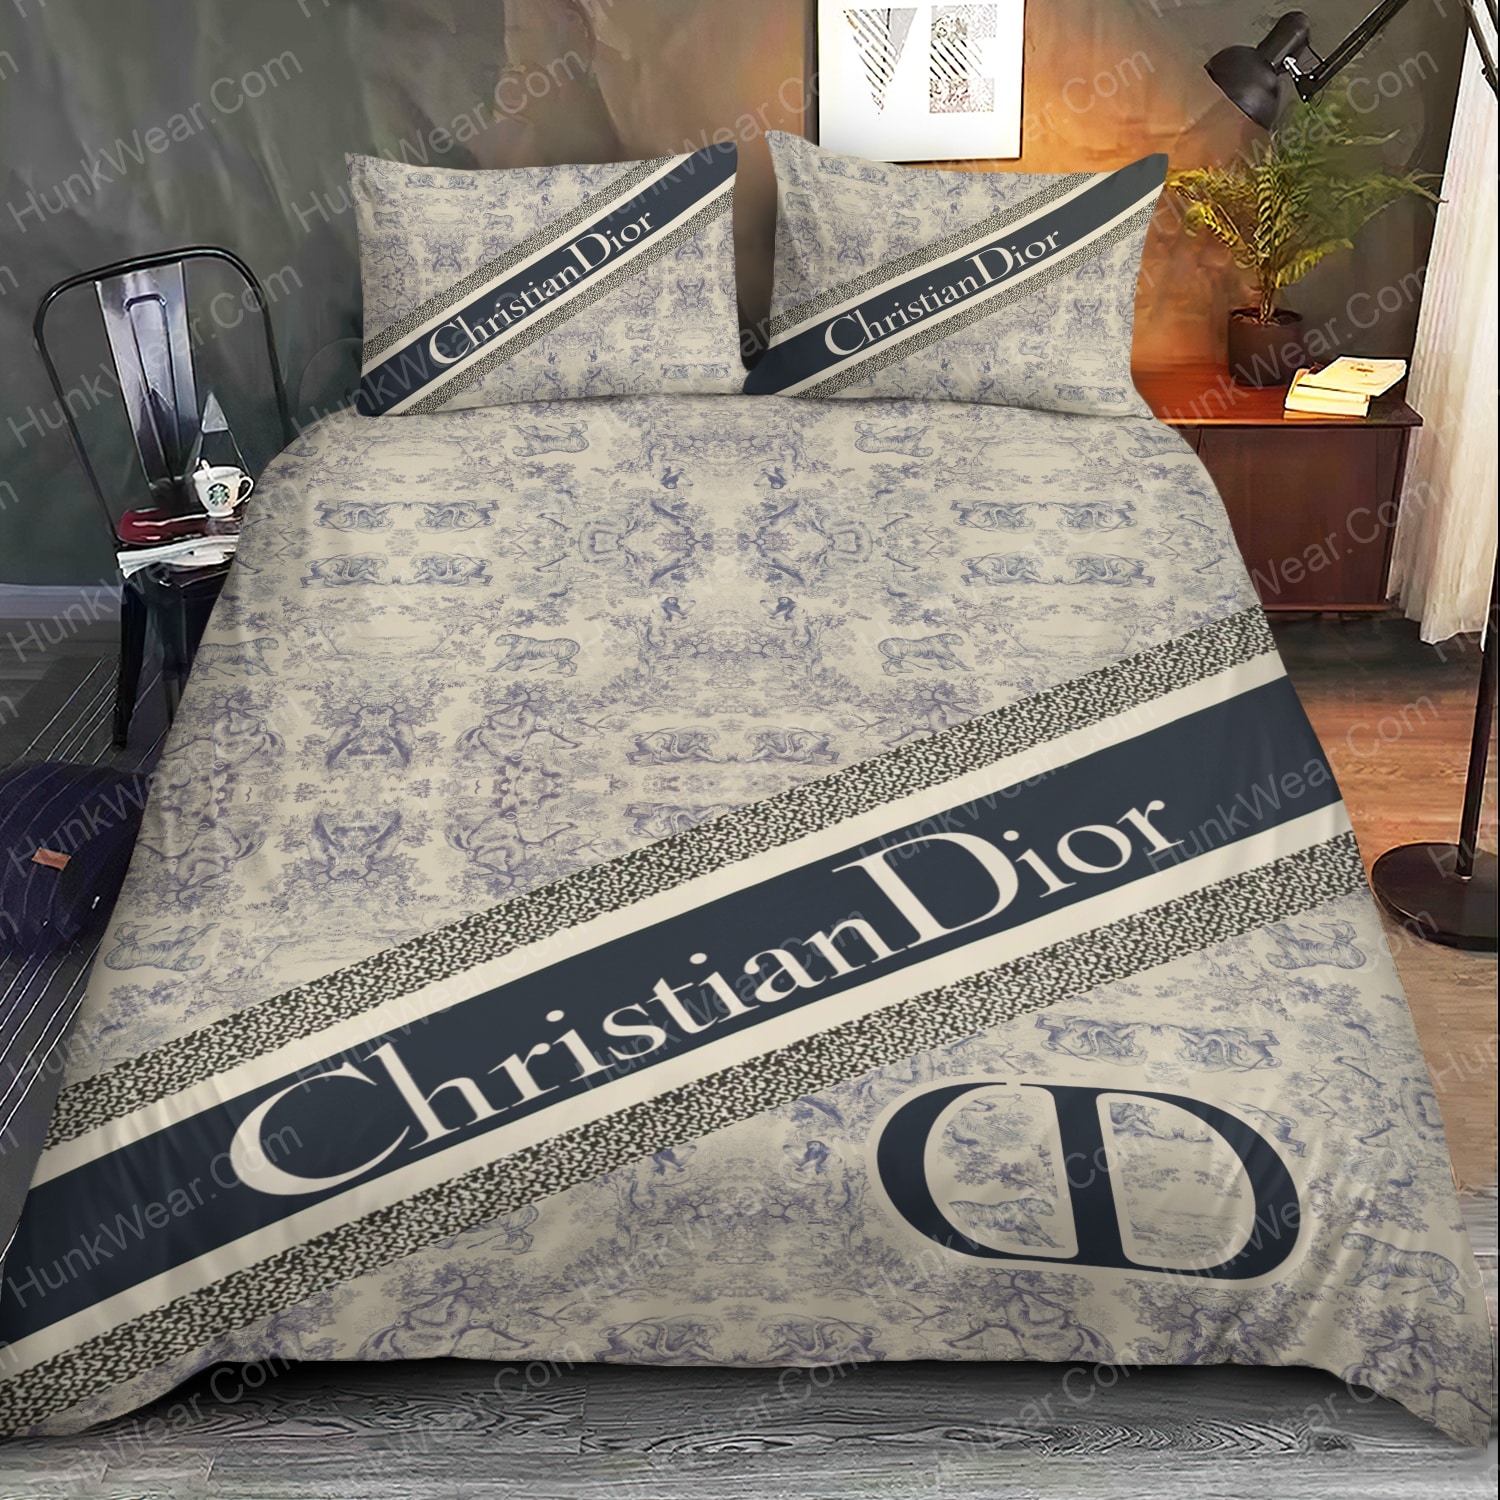 christian dior logo bed set bedding set